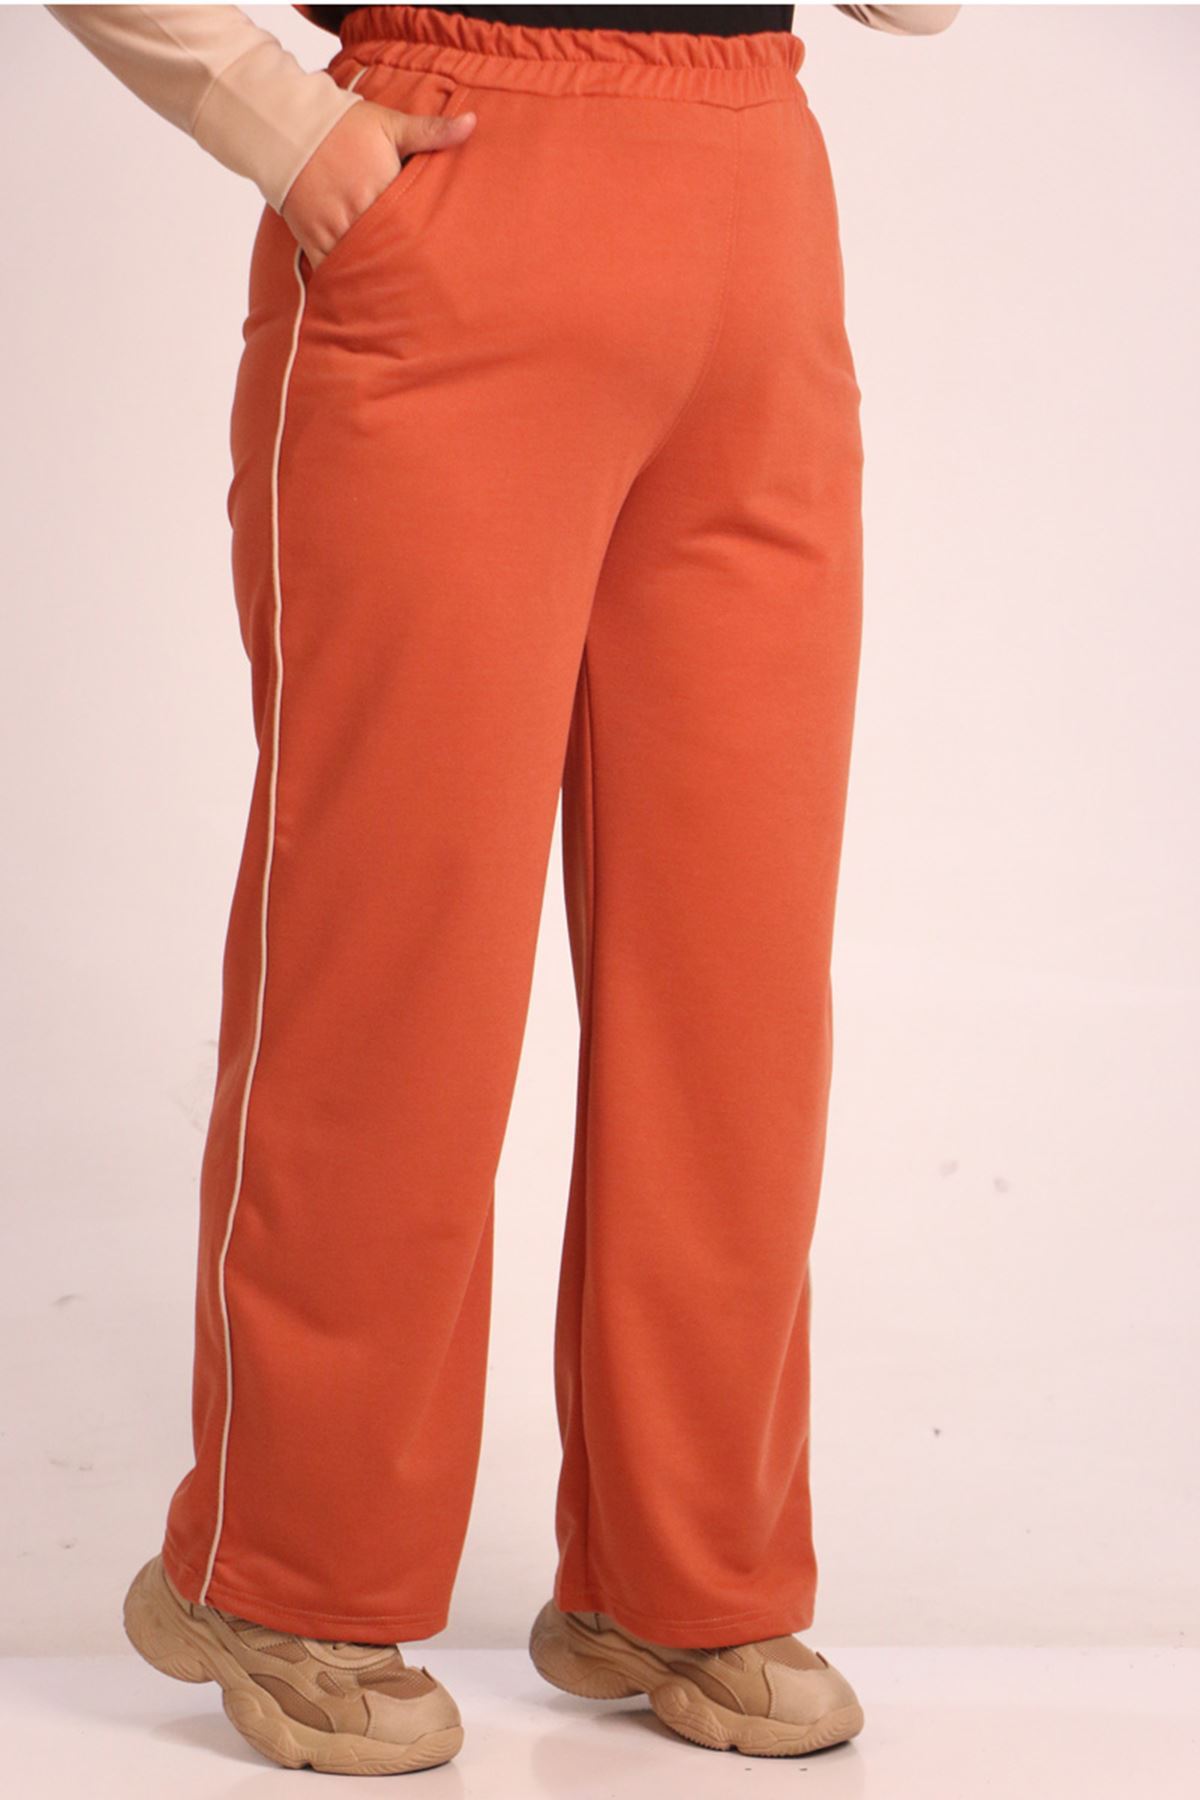 SHRNR19820 Büyük Beden Renk Kombinli İki İplik Pantolonlu Takım-Bej Kiremit 